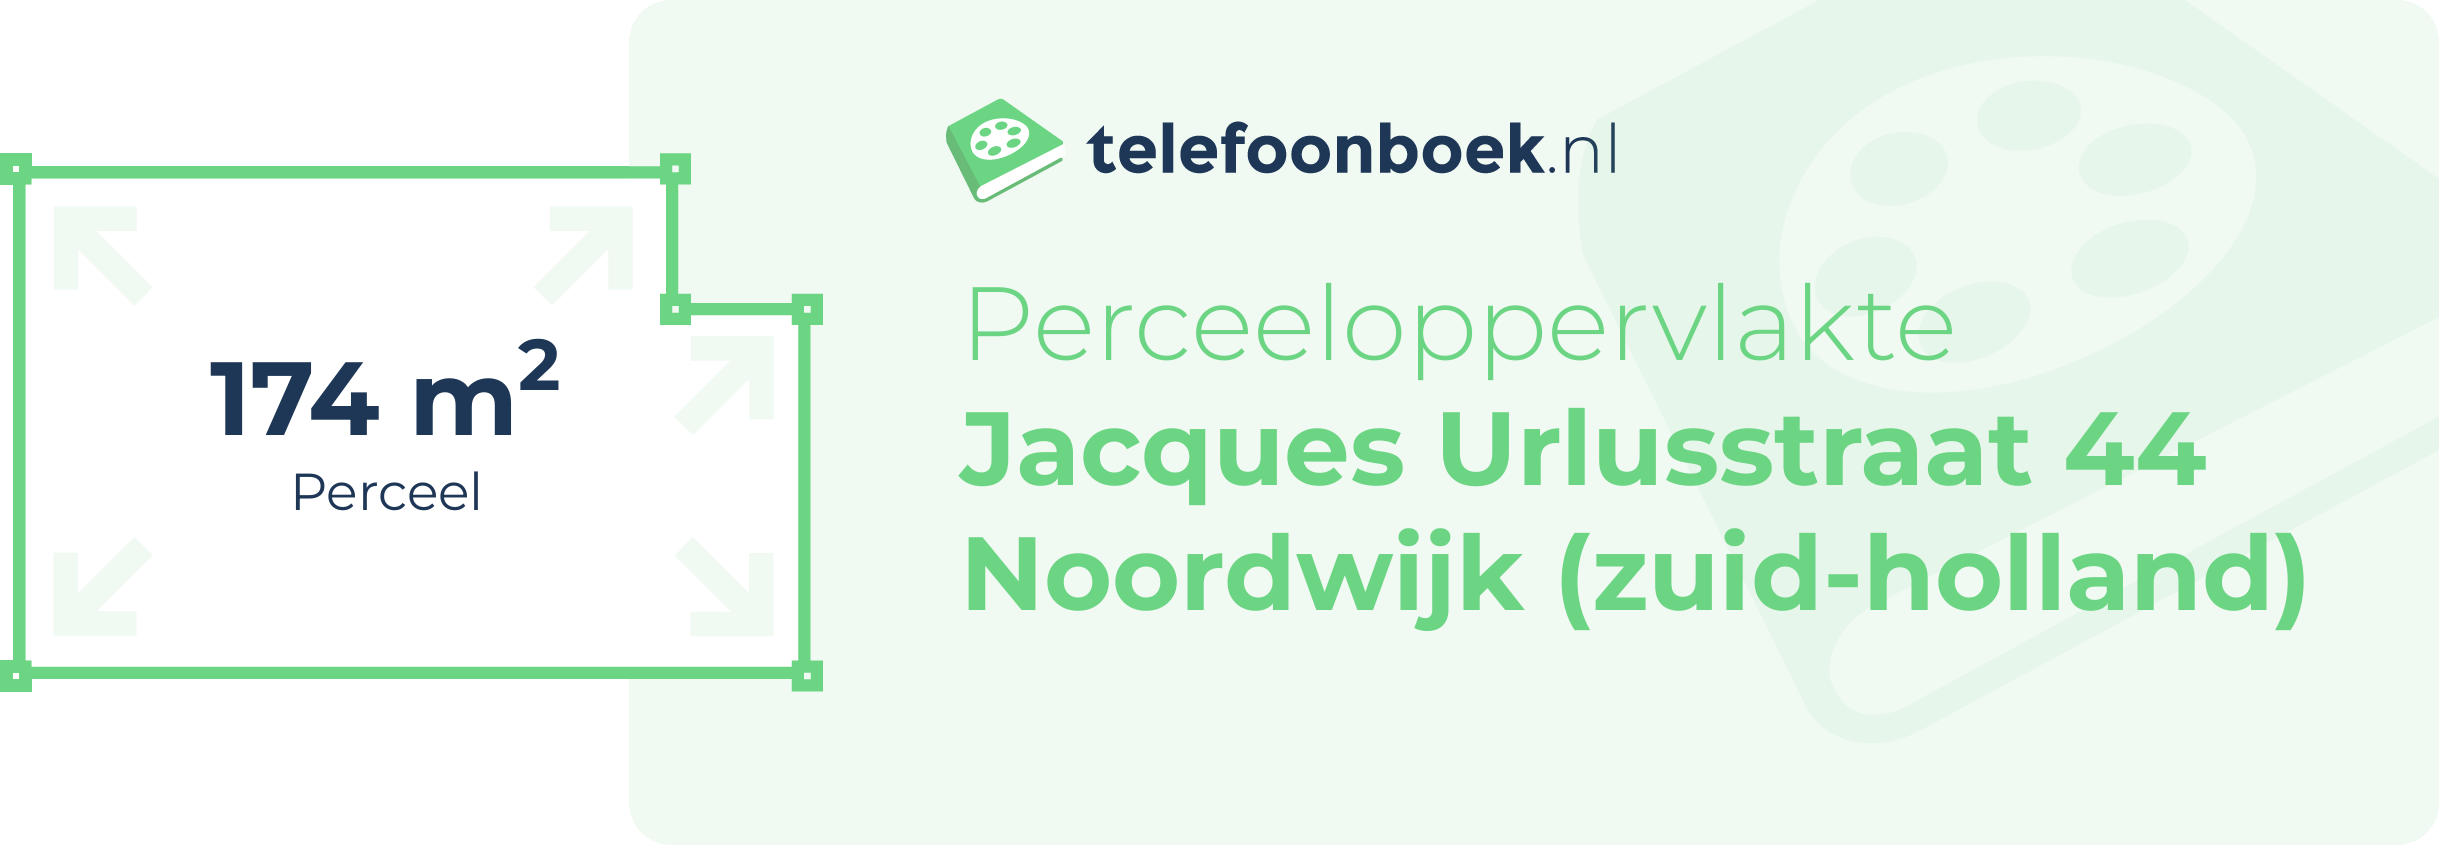 Perceeloppervlakte Jacques Urlusstraat 44 Noordwijk (Zuid-Holland)